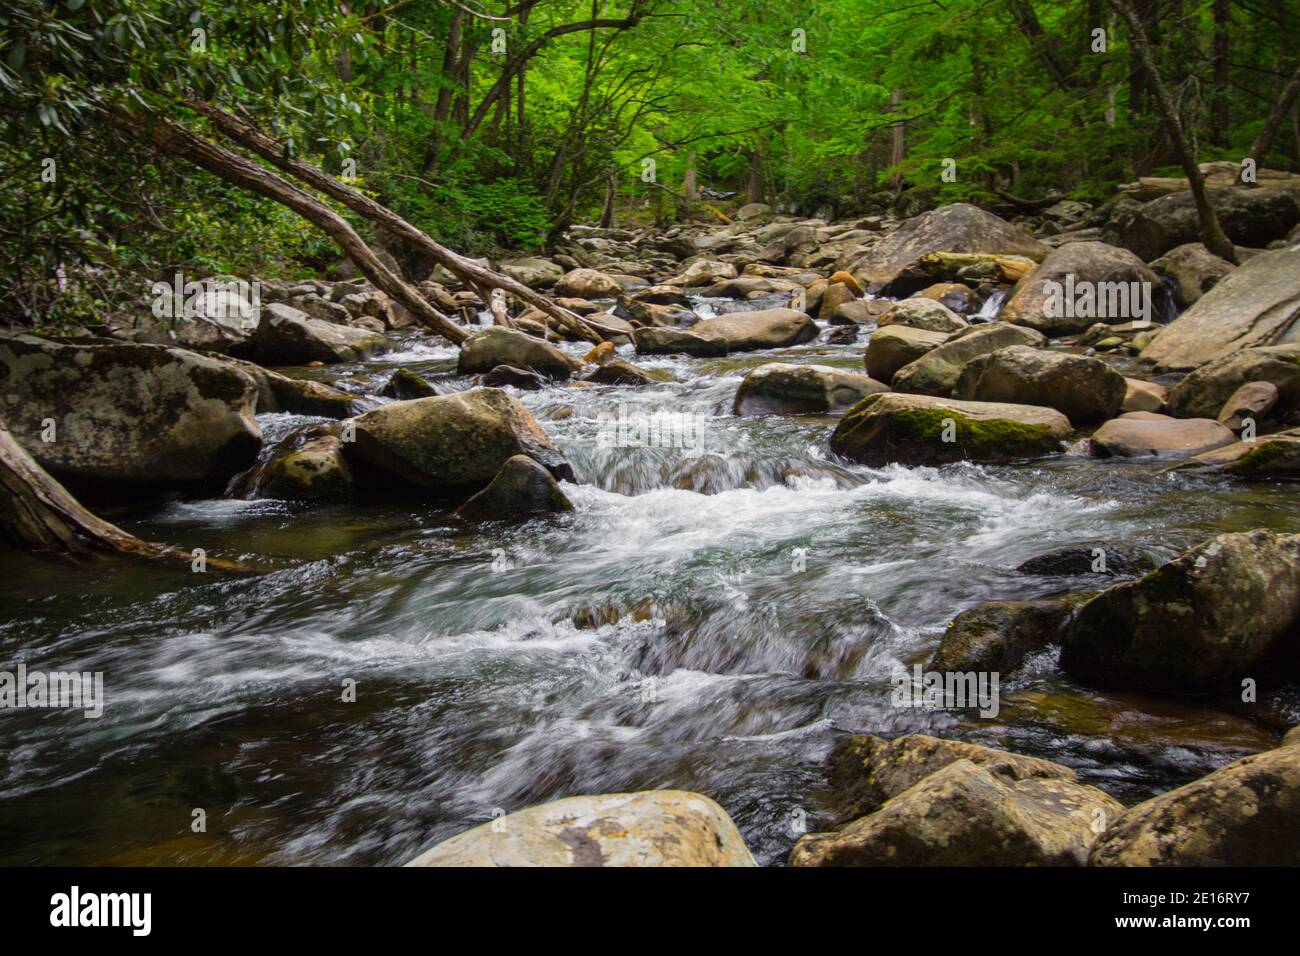 Great Smoky Mountains au printemps.Rivière qui se précipite au milieu d'une végétation luxuriante au printemps dans le parc national des Great Smoky Mountains, dans le Tennessee. Banque D'Images